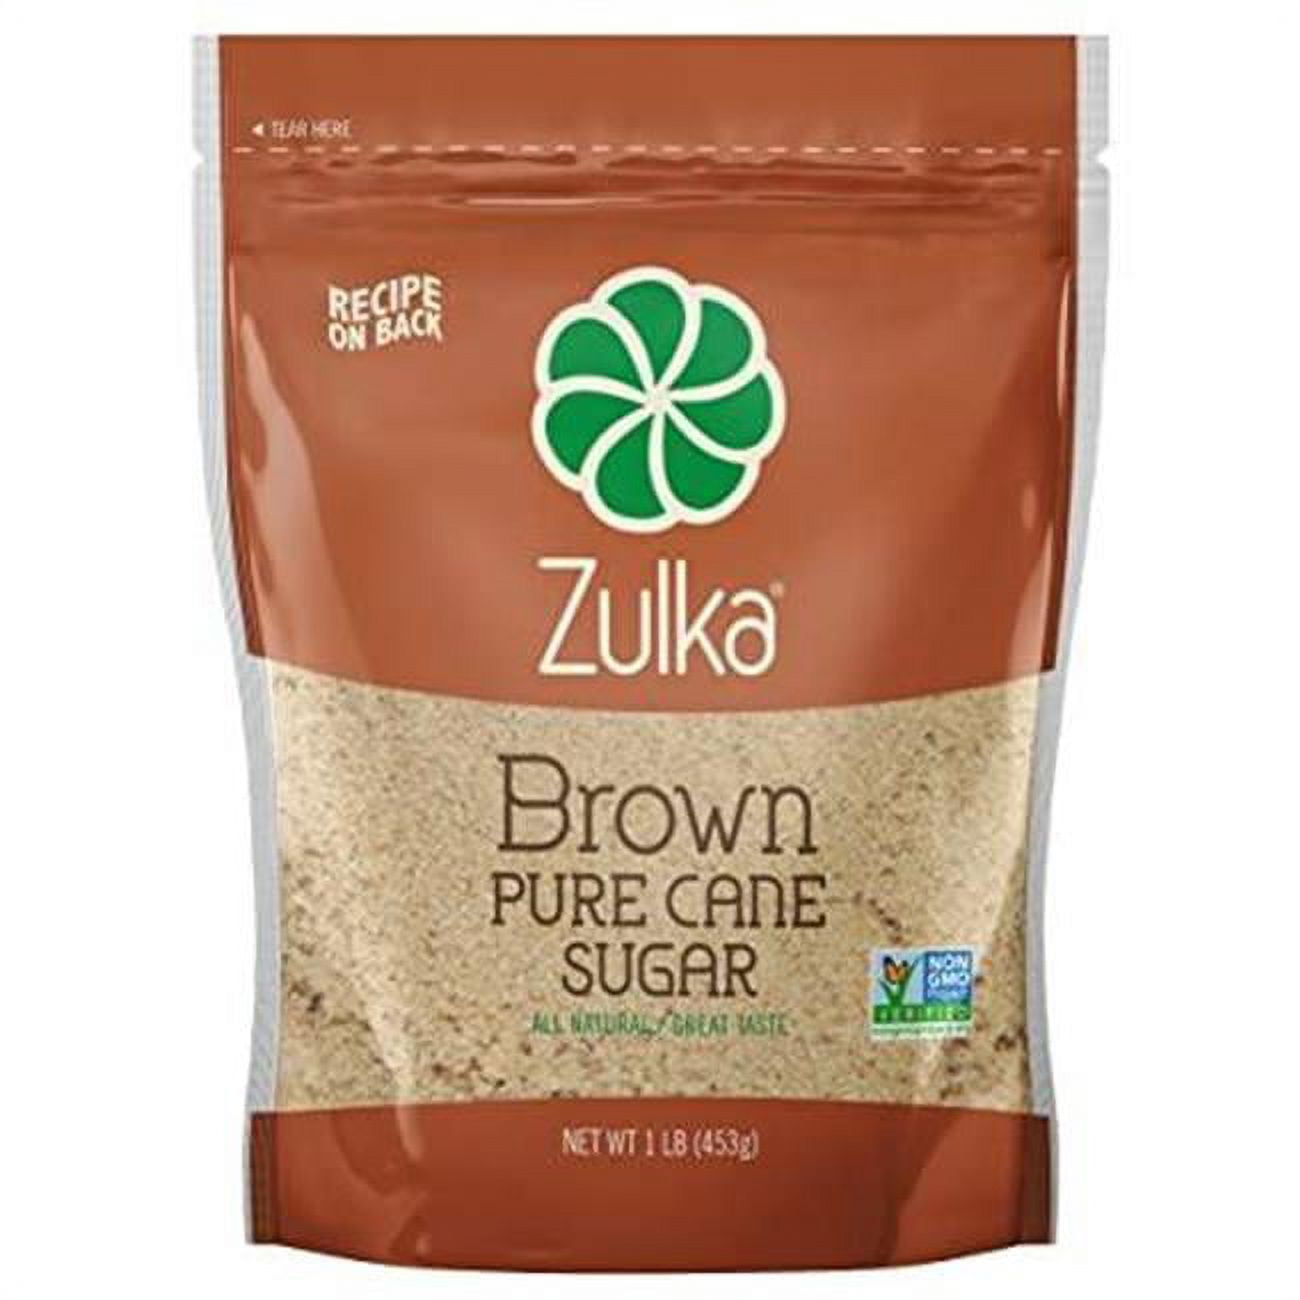 Zulka Brown Pure Cane Sugar, 1.0 LB